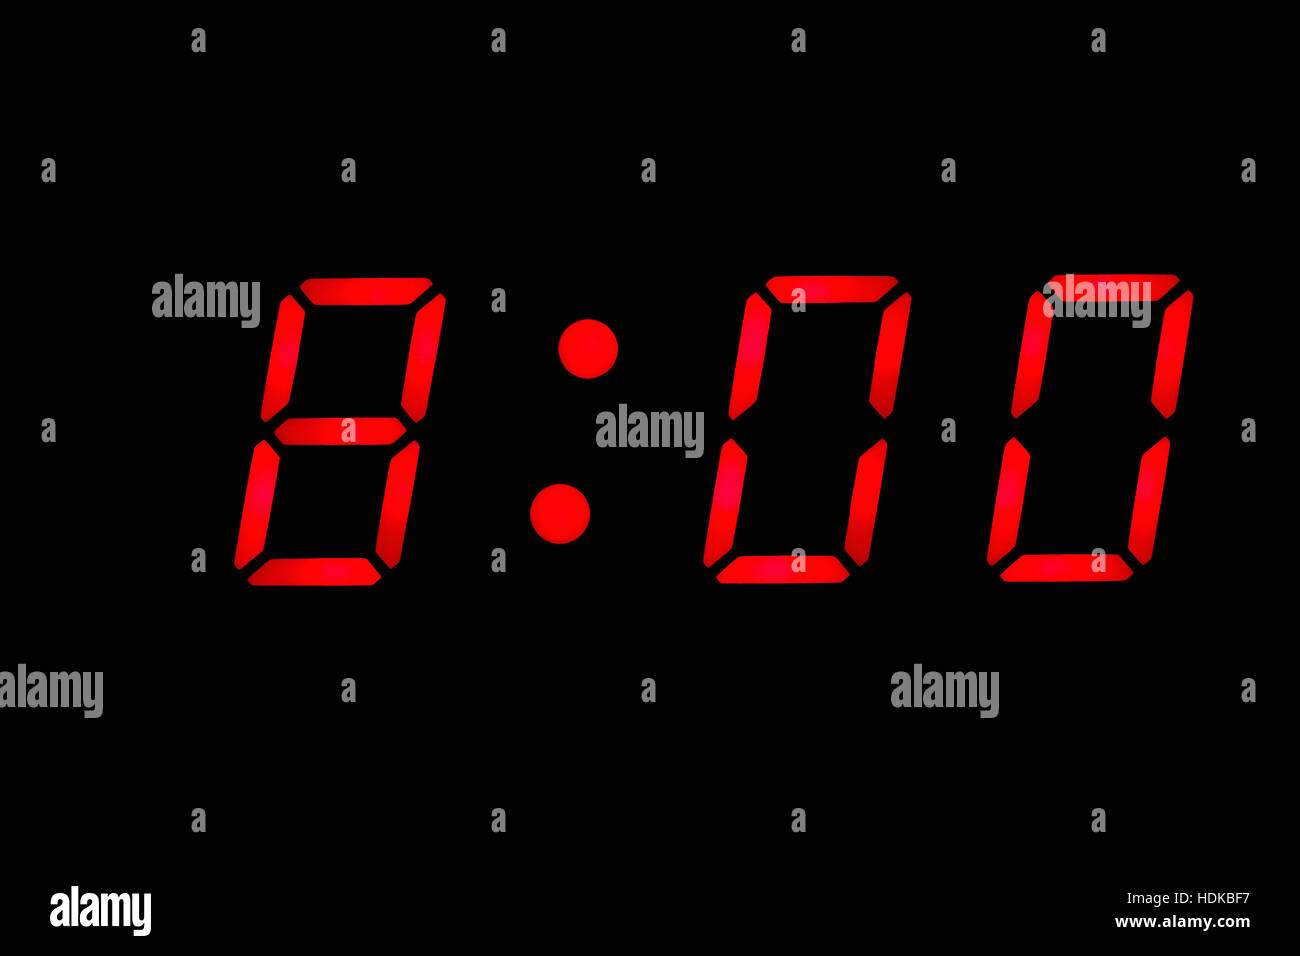 Поставь будильник на 8 45. Электронные часы на черном фоне. Электронные часы с временем 11:10. Электронные часы в спальне Кадр. Миллисекунда в цифровых часах.